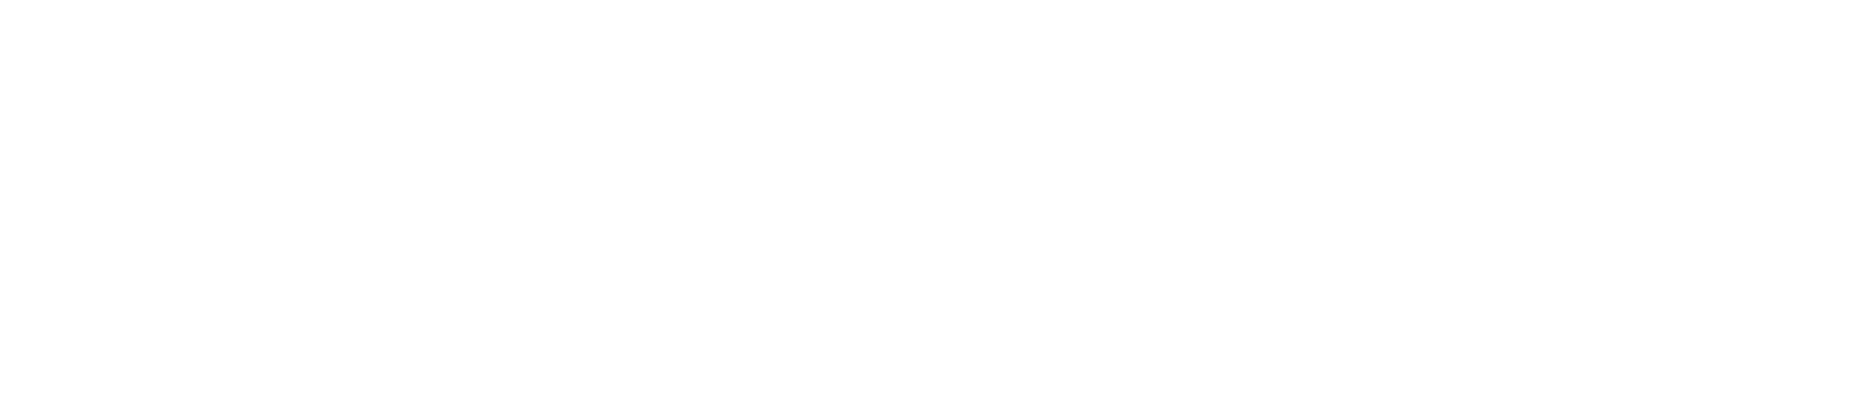 sportbp-logo-white